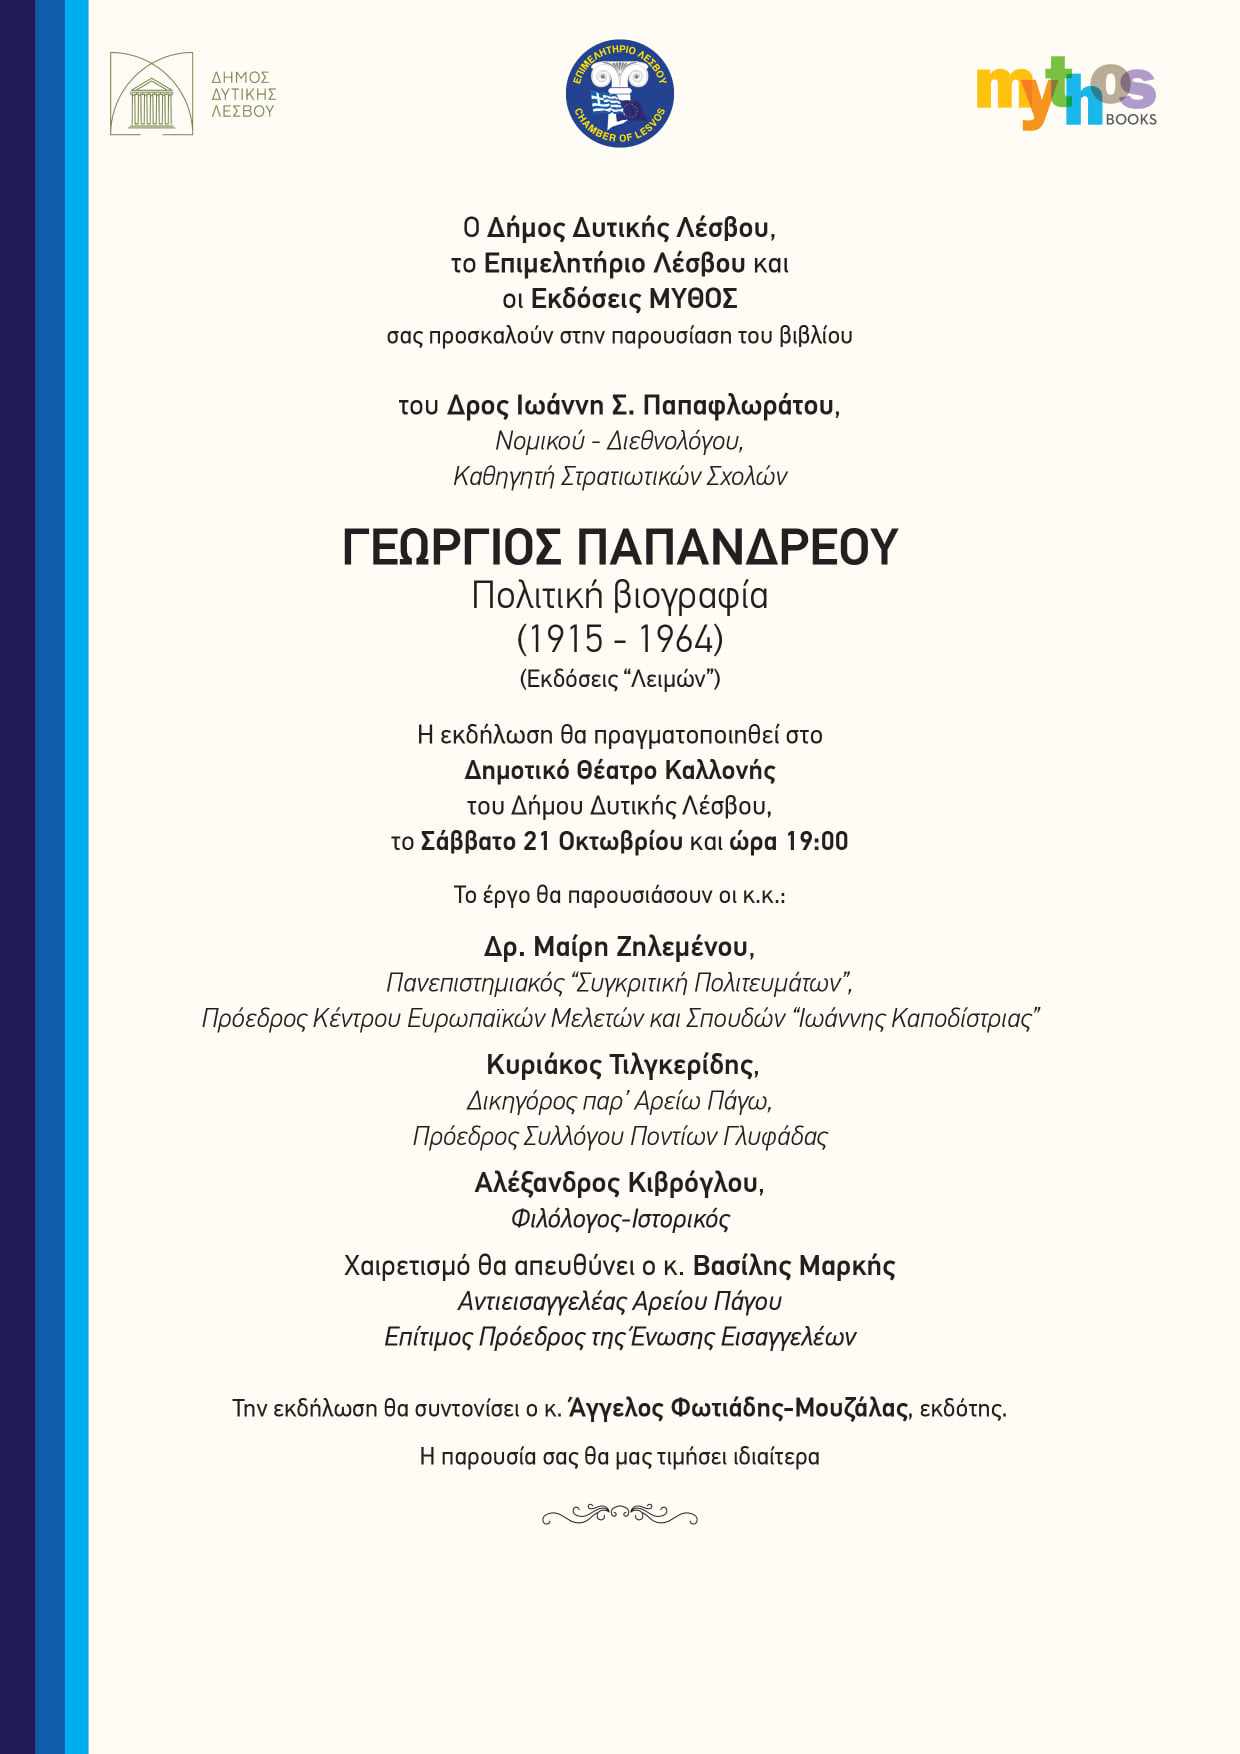 Λέσβος: Παρουσίαση βιβλίου «Γεωργίου Παπανδρέου, Πολιτική Βιογραφία 1915-1964»